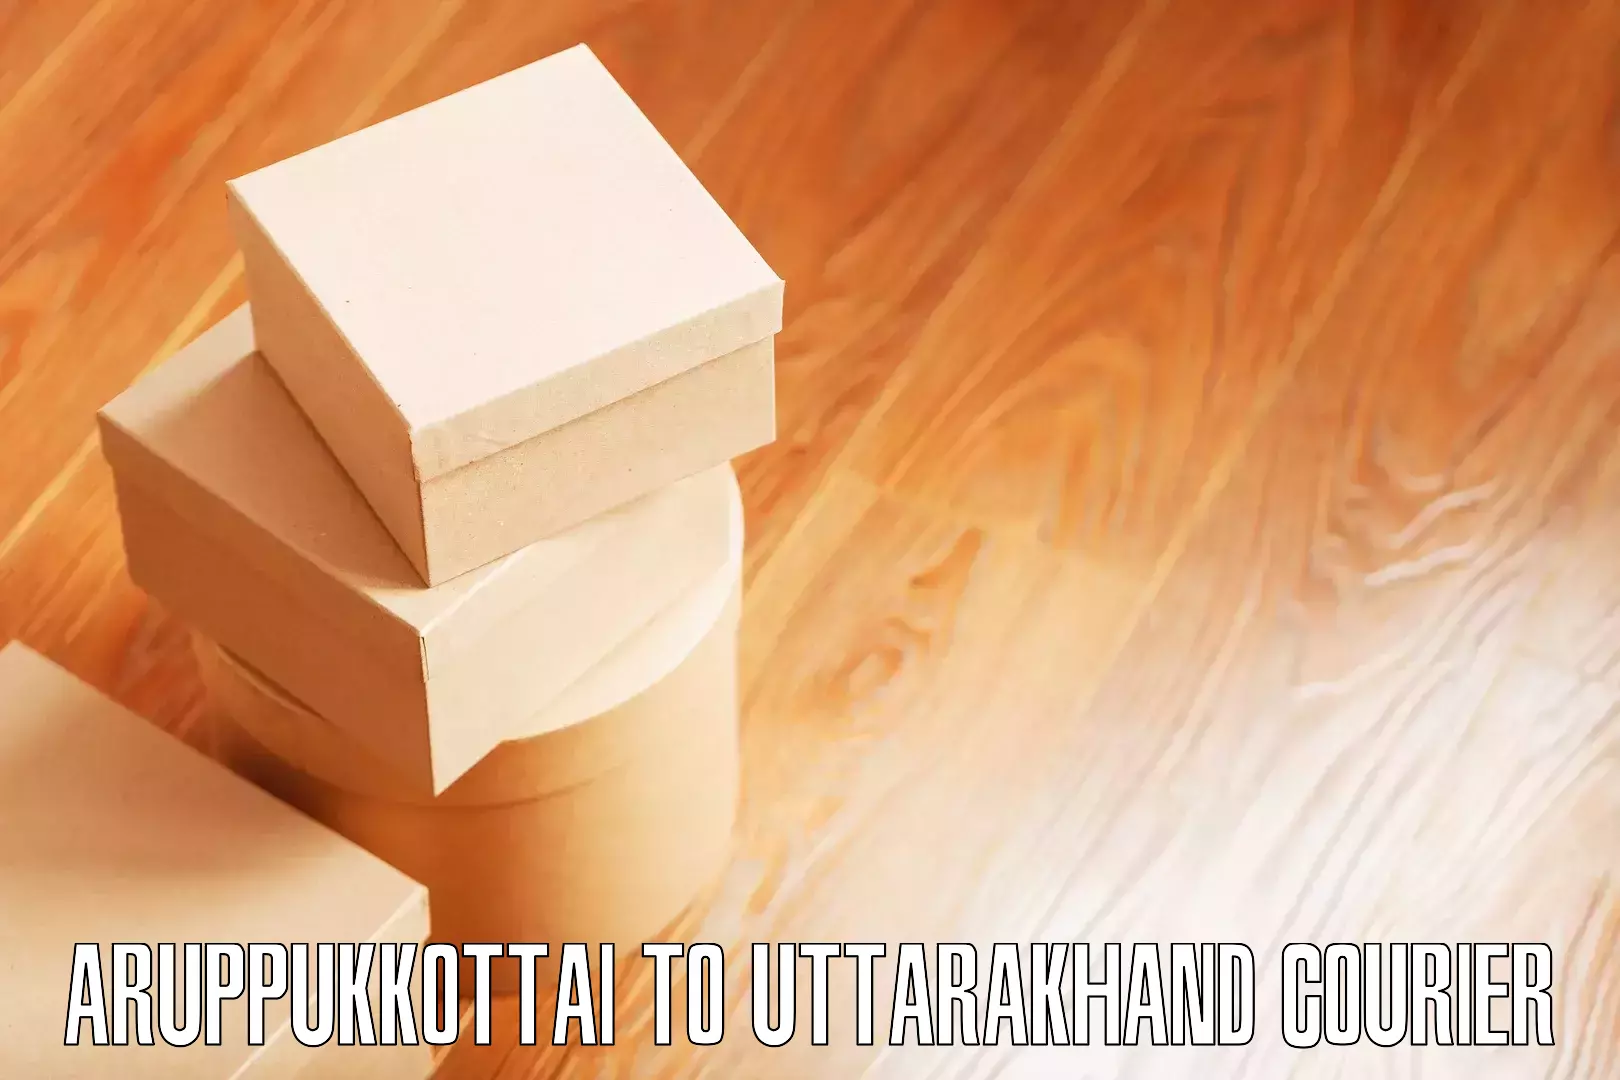 Furniture moving and handling Aruppukkottai to Tanakpur